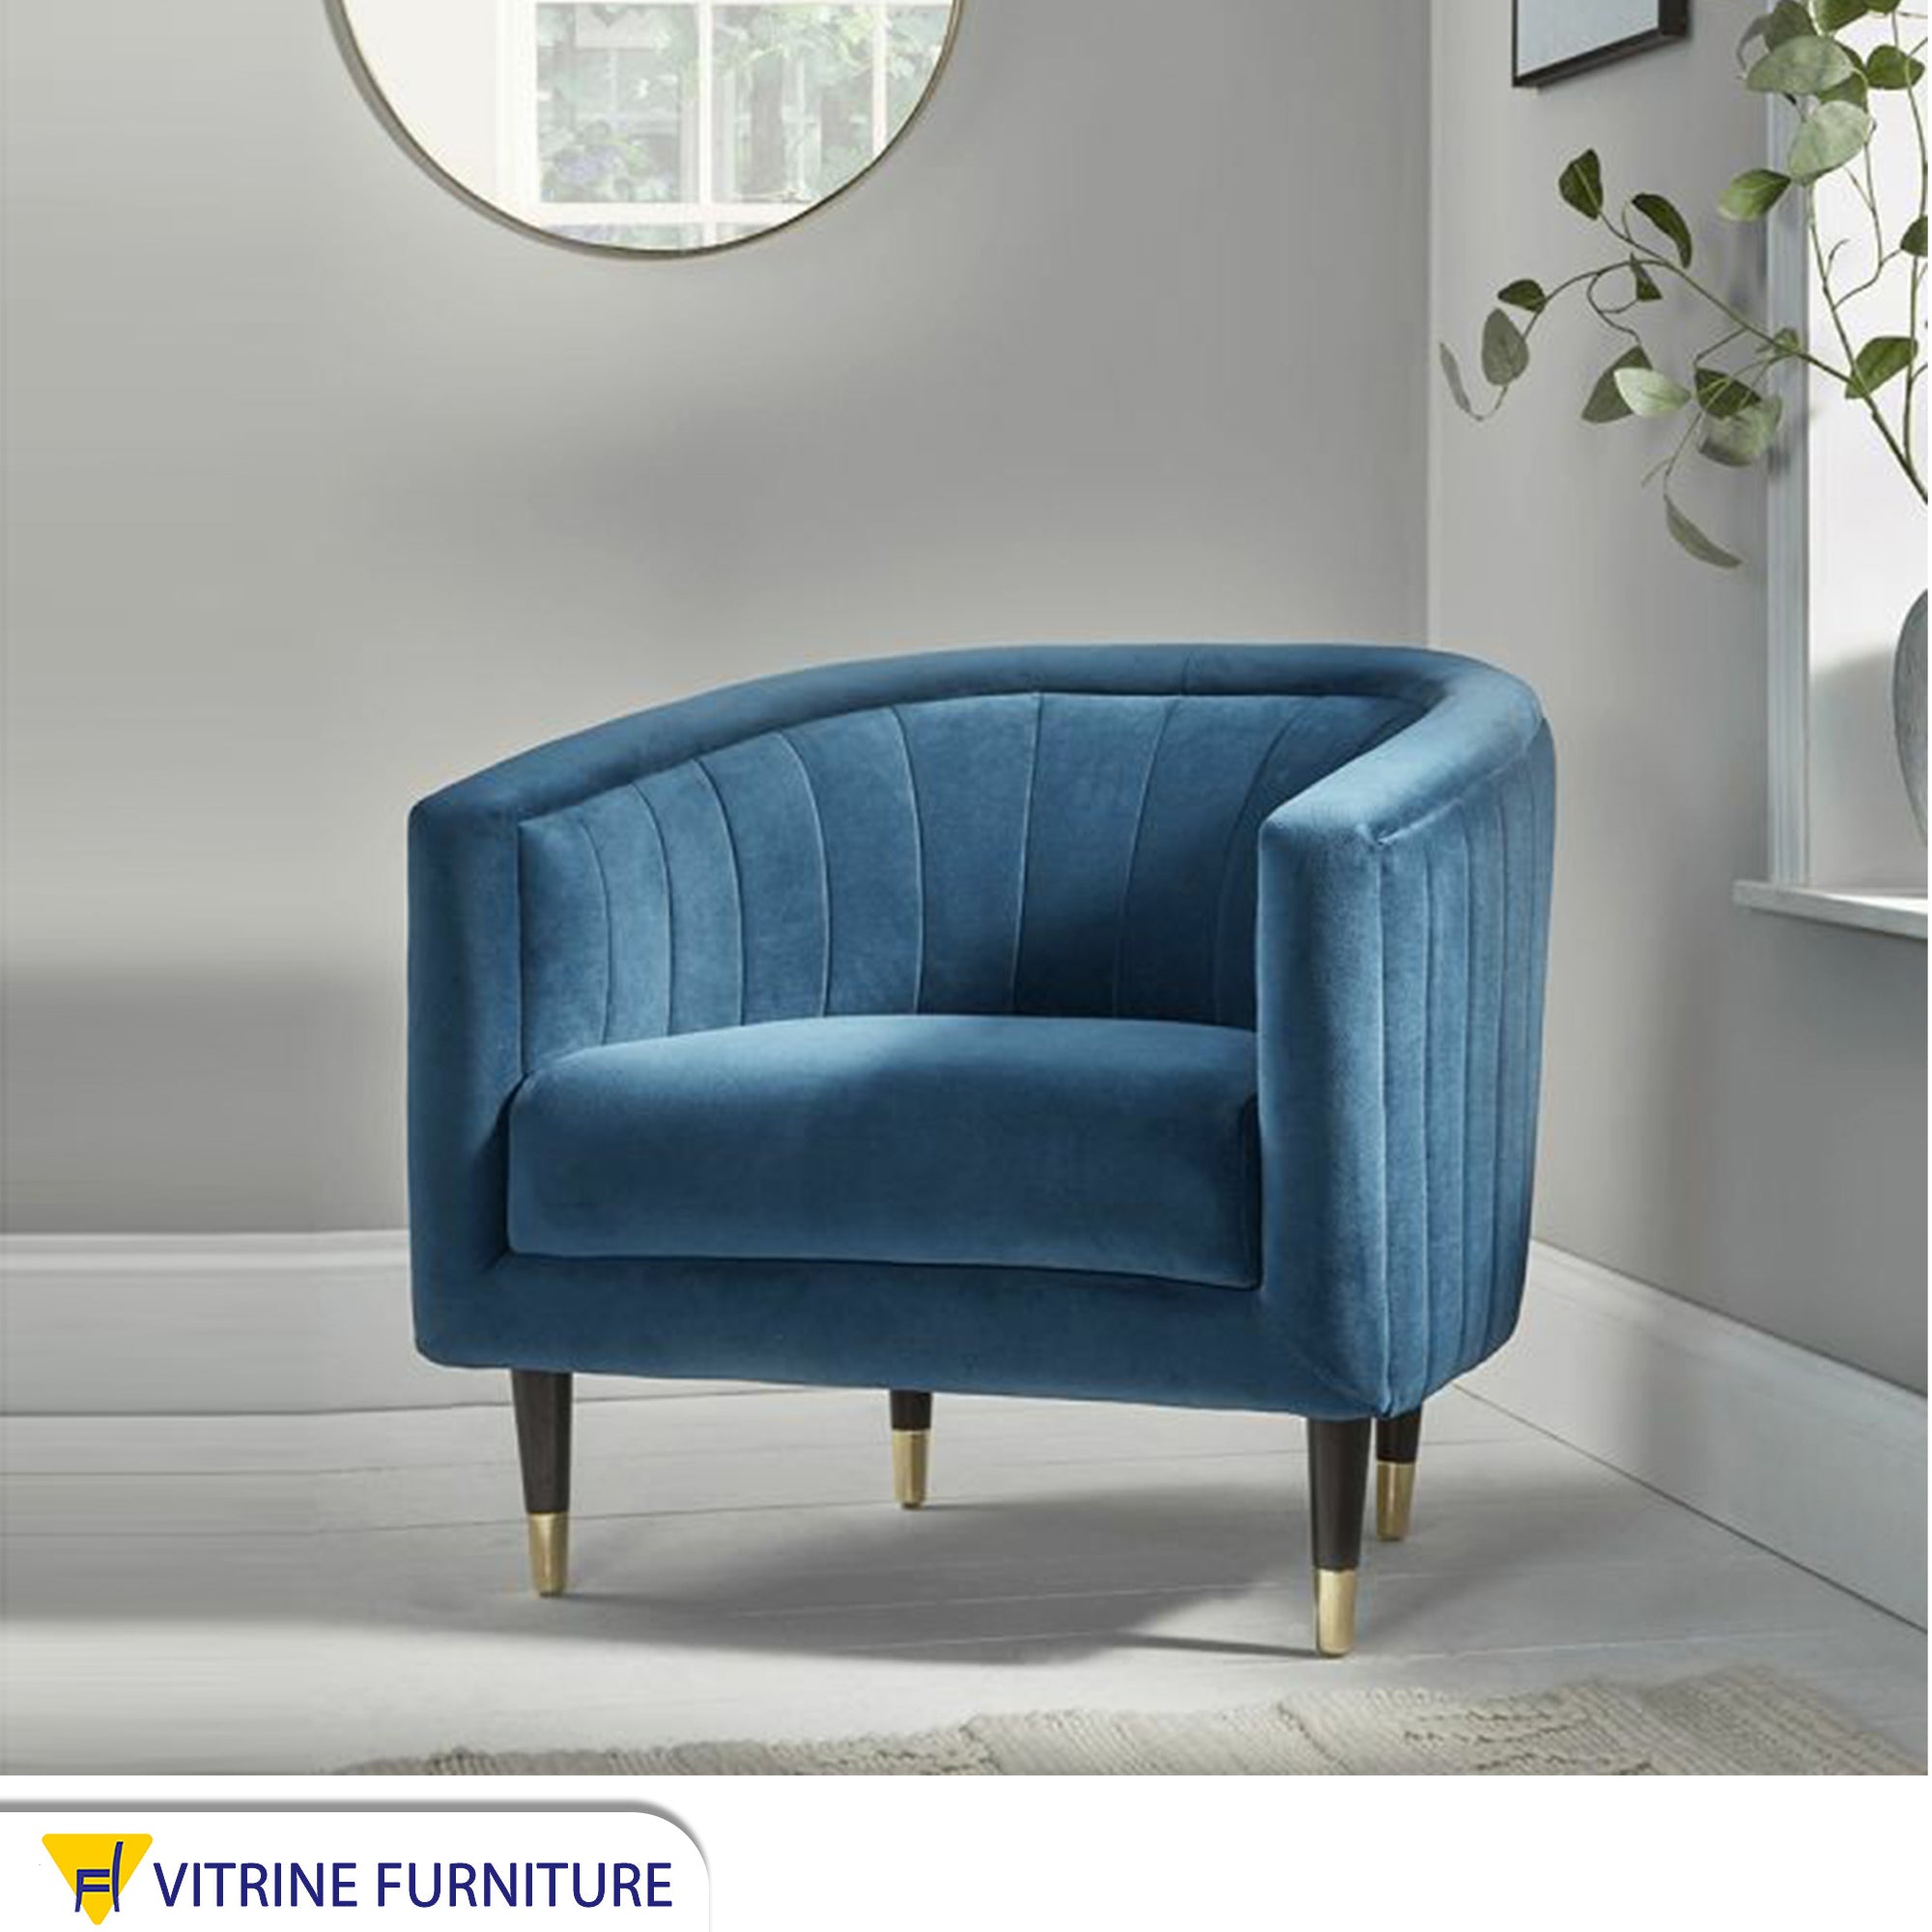 كرسي فوتية ازرق زهرى بخياطات طولية من الداخل و الخارج